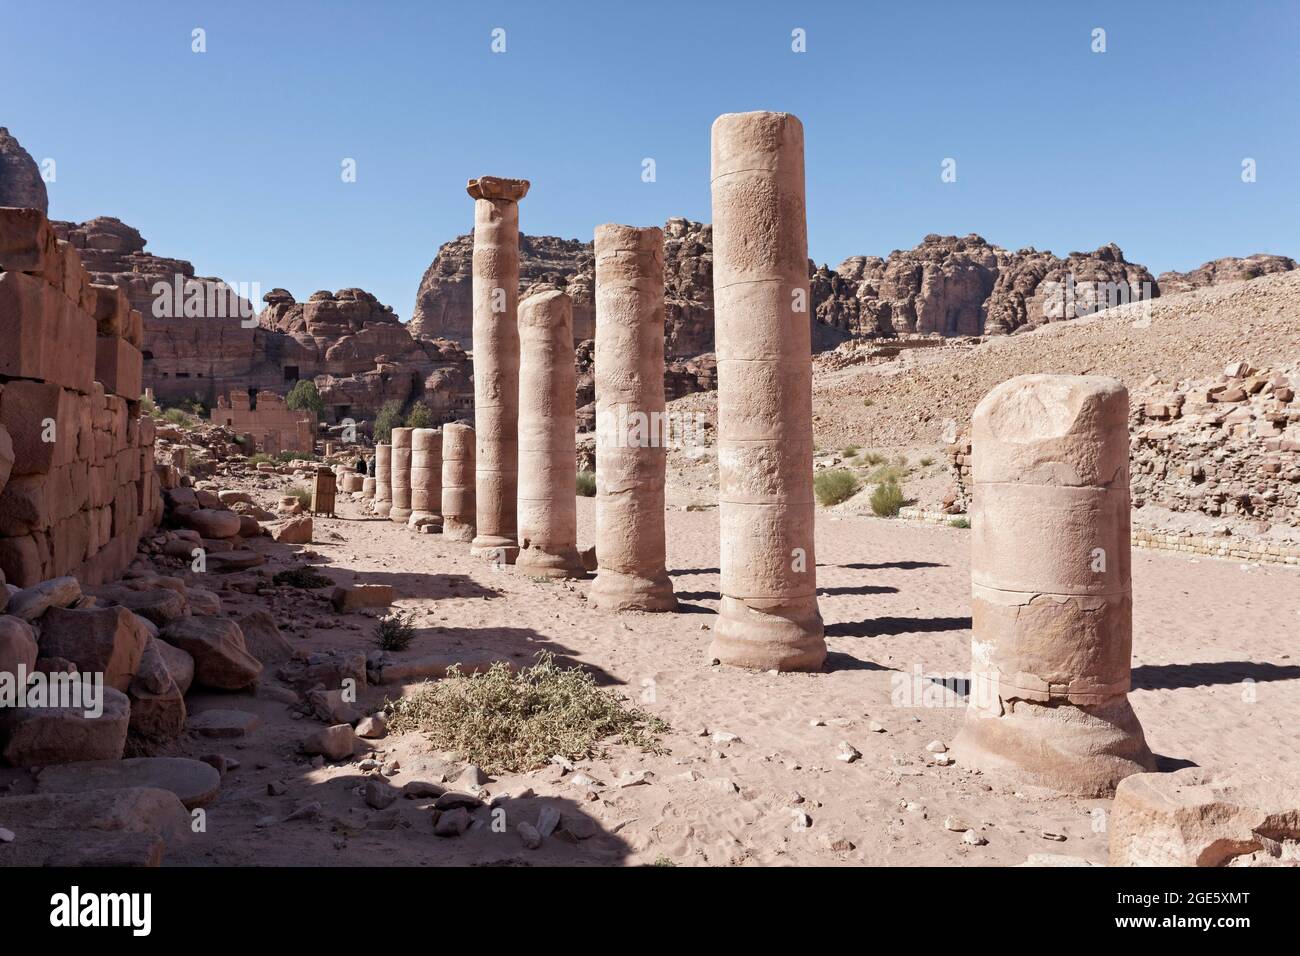 Colonne a Colonnade Street, Petra, patrimonio dell'umanità dell'UNESCO, Regno di Giordania Foto Stock